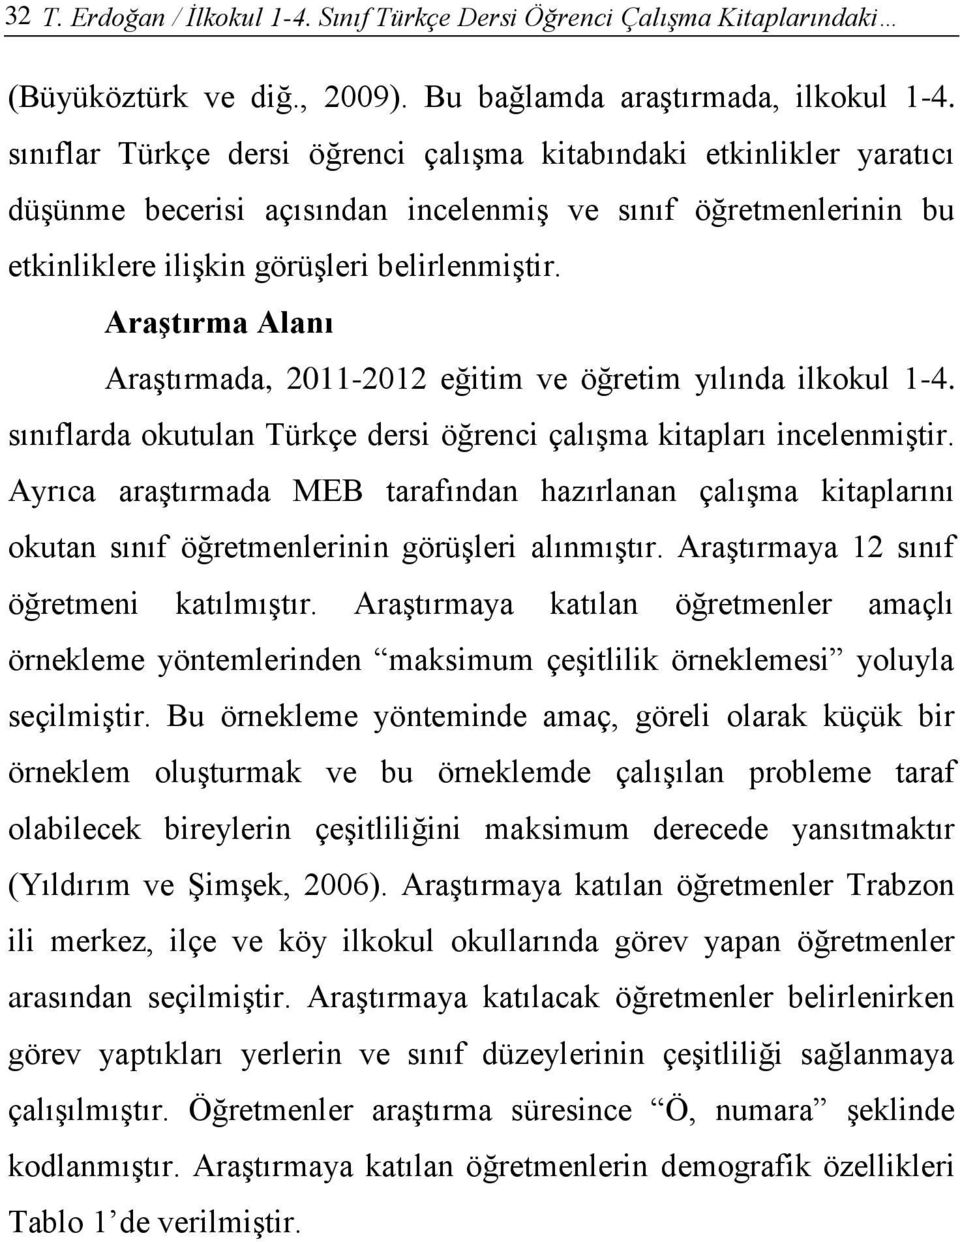 AraĢtırma Alanı Araştırmada, 2011-2012 eğitim ve öğretim yılında ilkokul 1-4. sınıflarda okutulan Türkçe dersi öğrenci çalışma kitapları incelenmiştir.